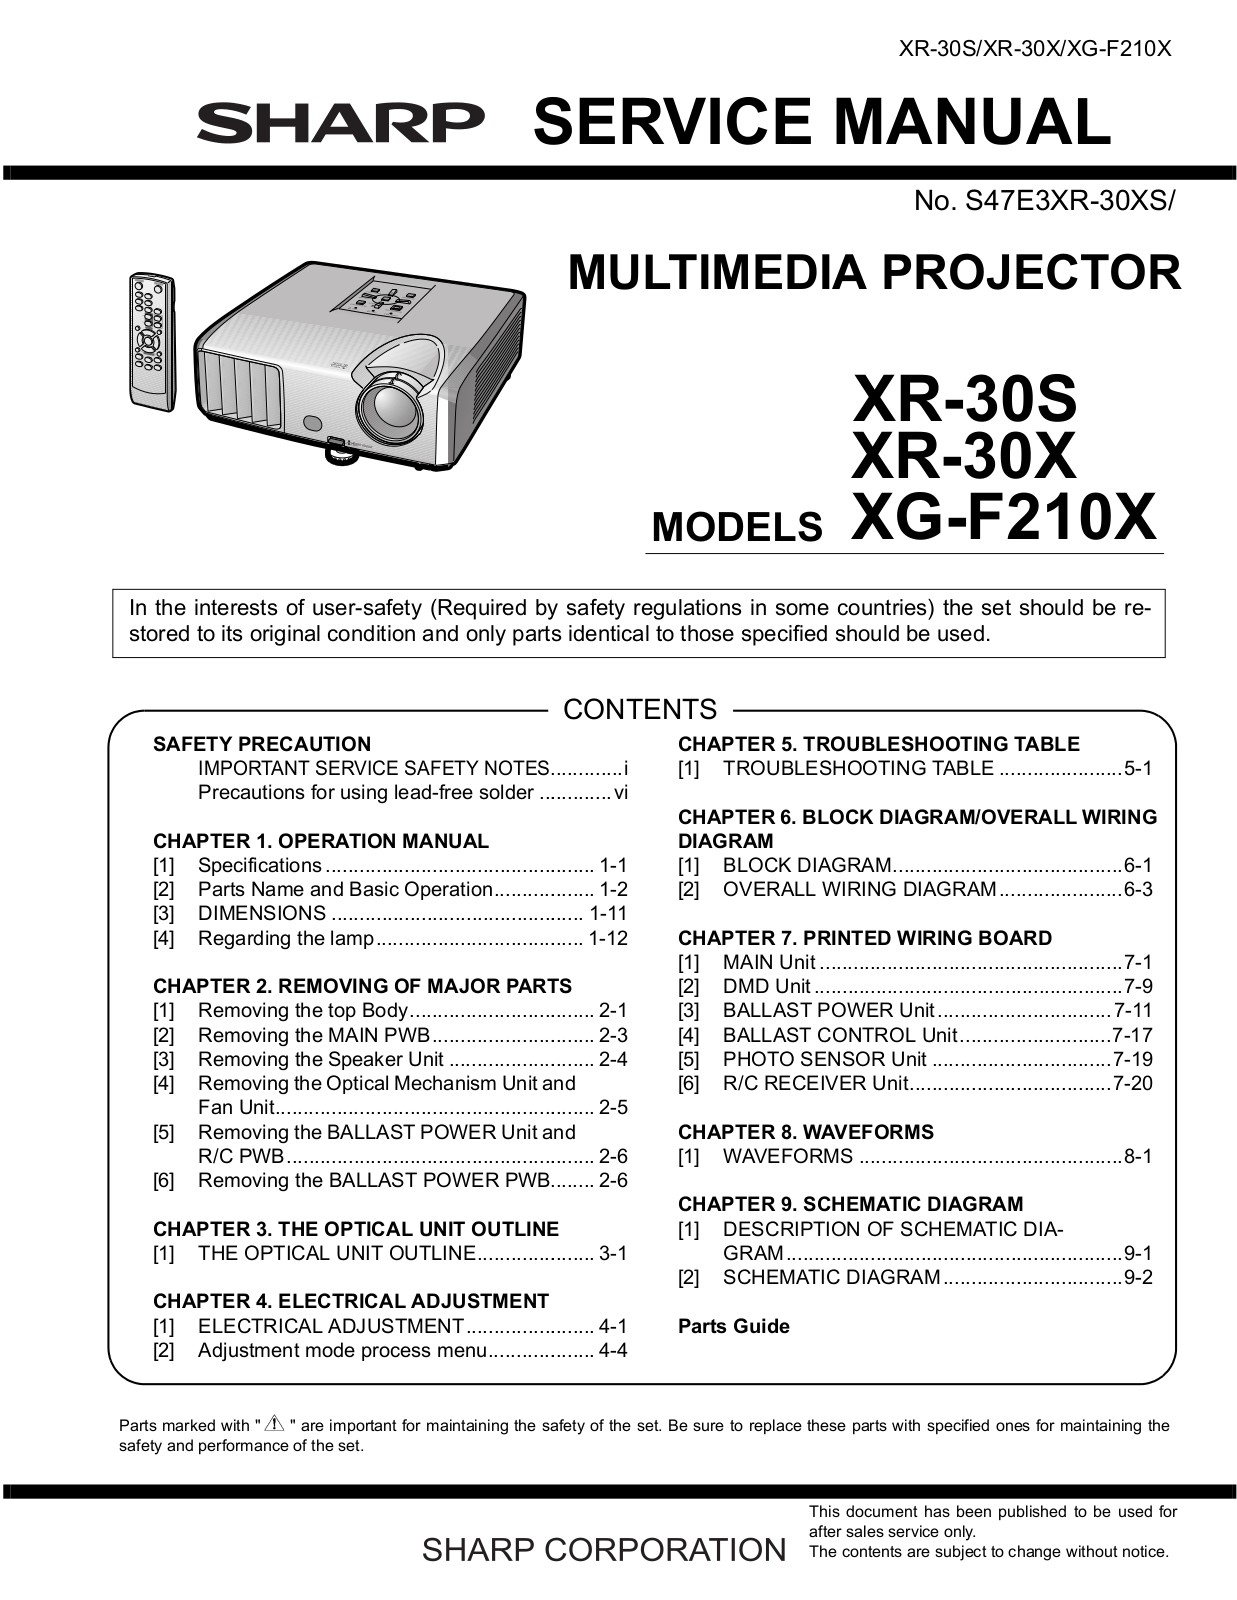 Sharp XR-30X, XR-30S, XG-F210X User Manual